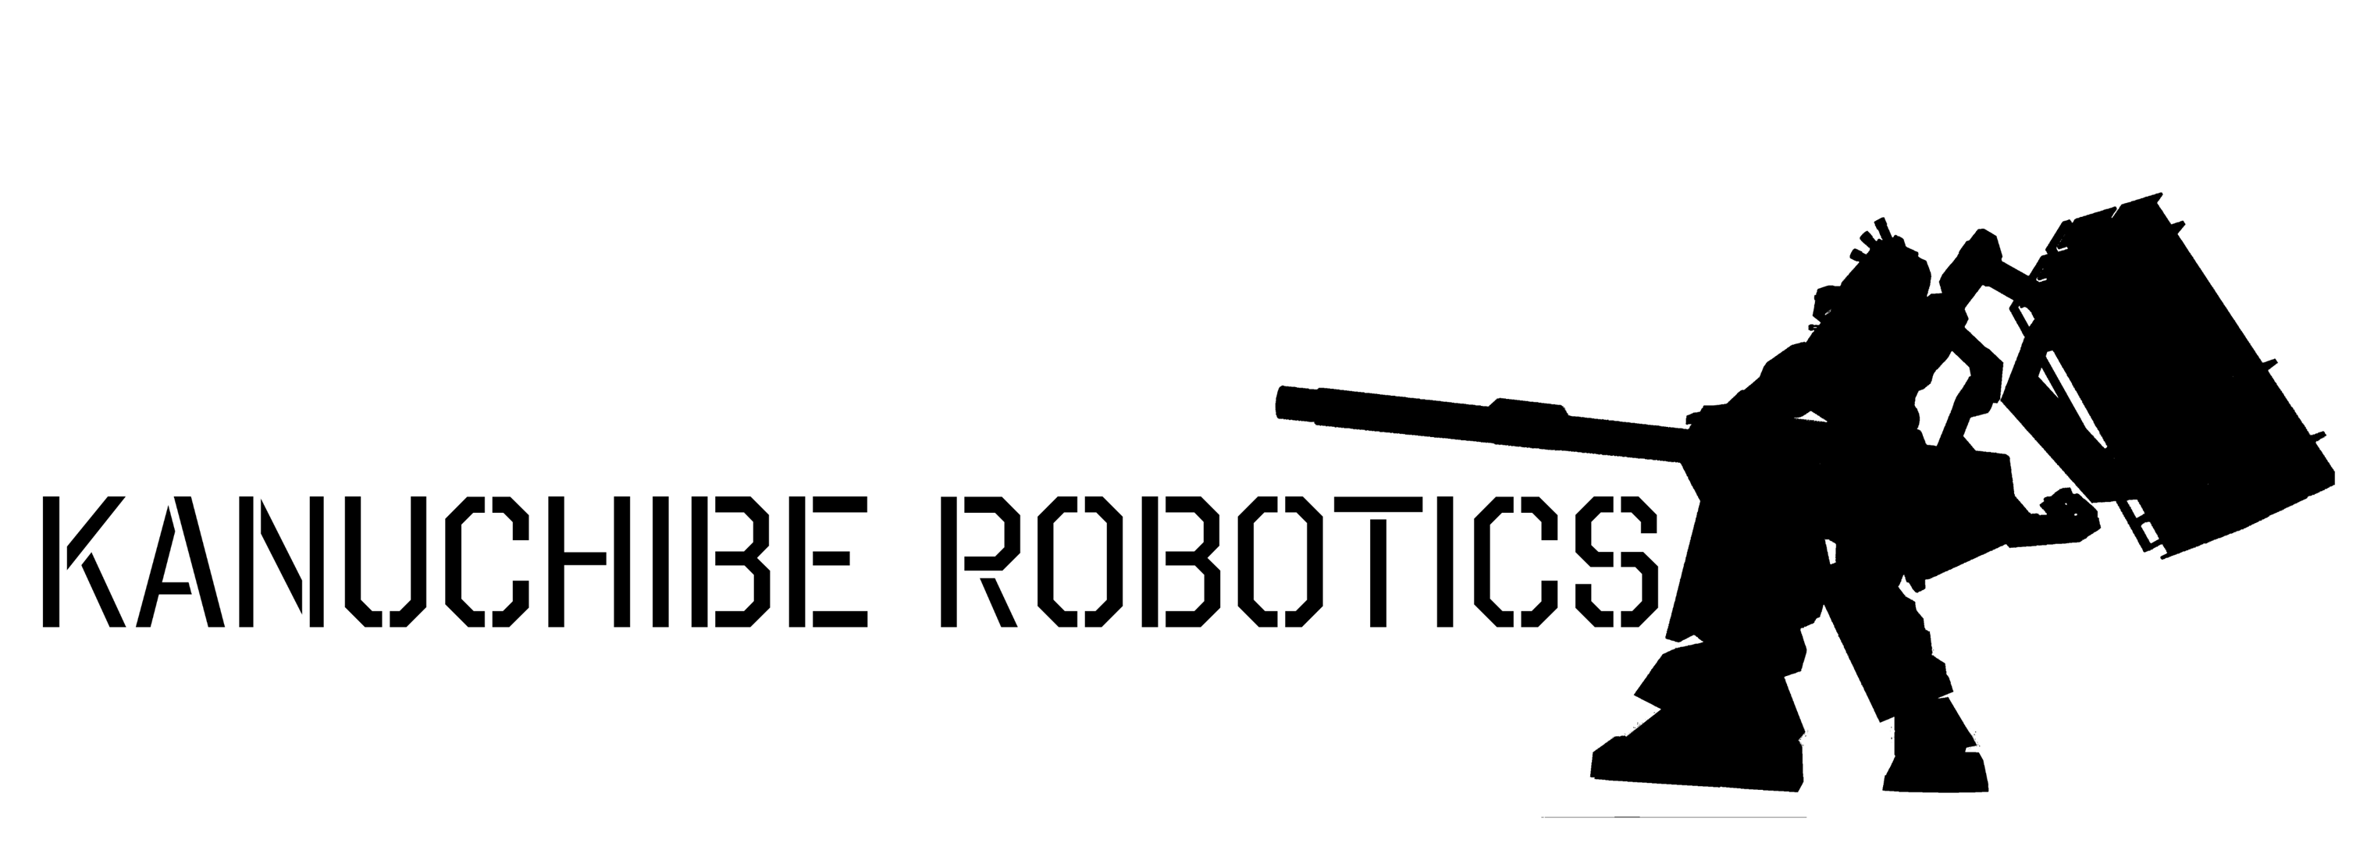 KANUCHIBE ROBOTICS